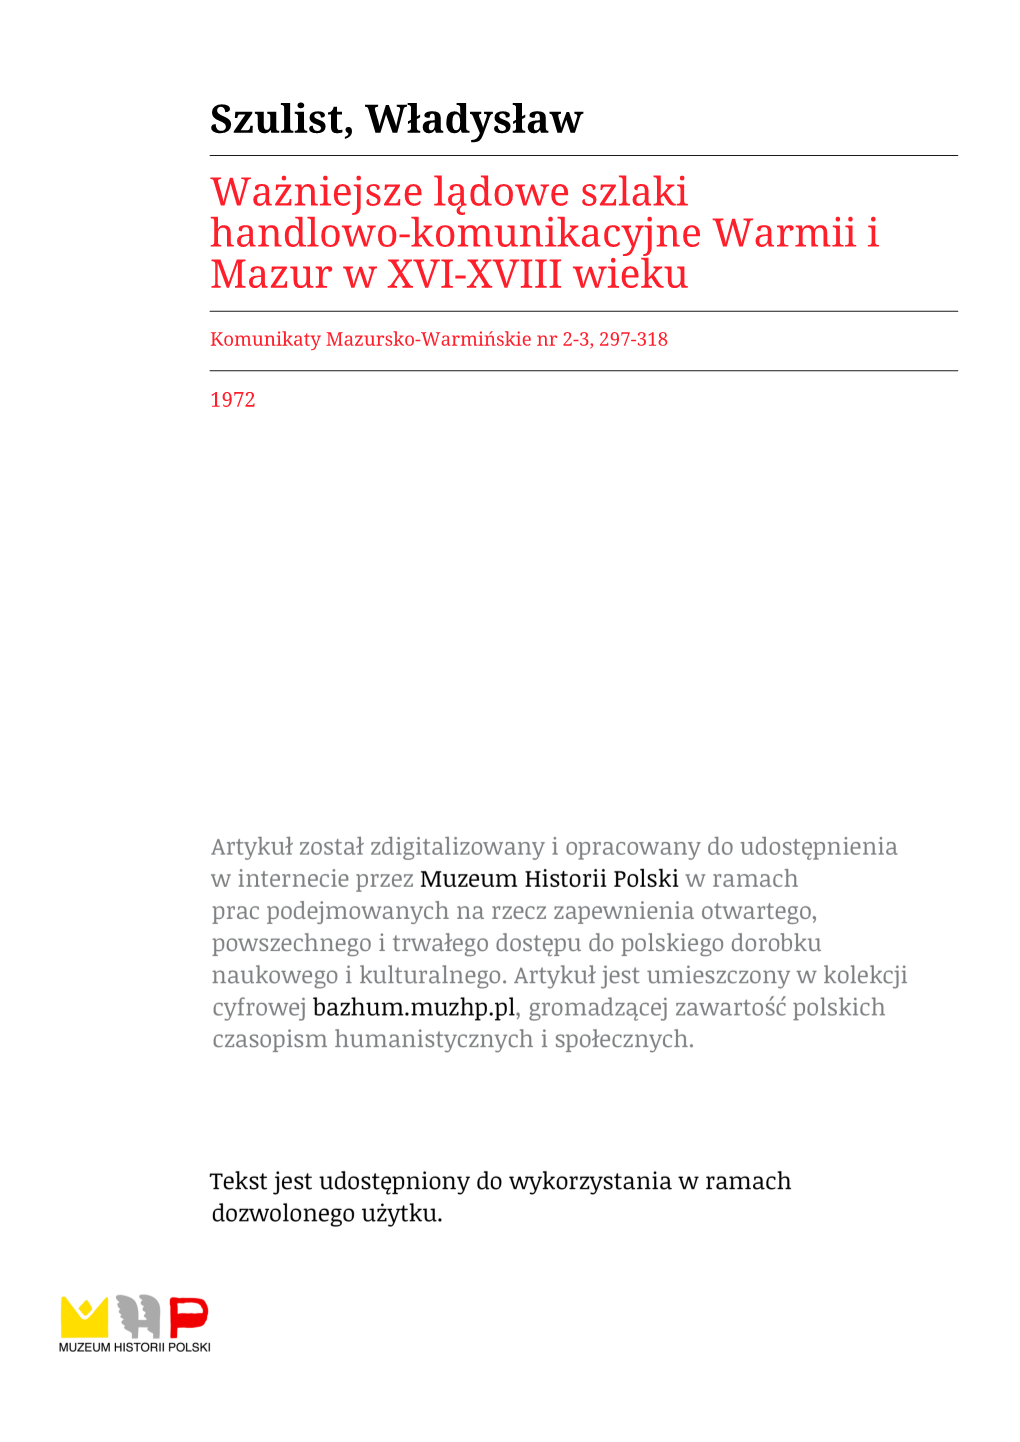 Szulist, Władysław Ważniejsze Lądowe Szlaki Handlowo-Komunikacyjne Warmii I Mazur W XVI-XVIII Wieku